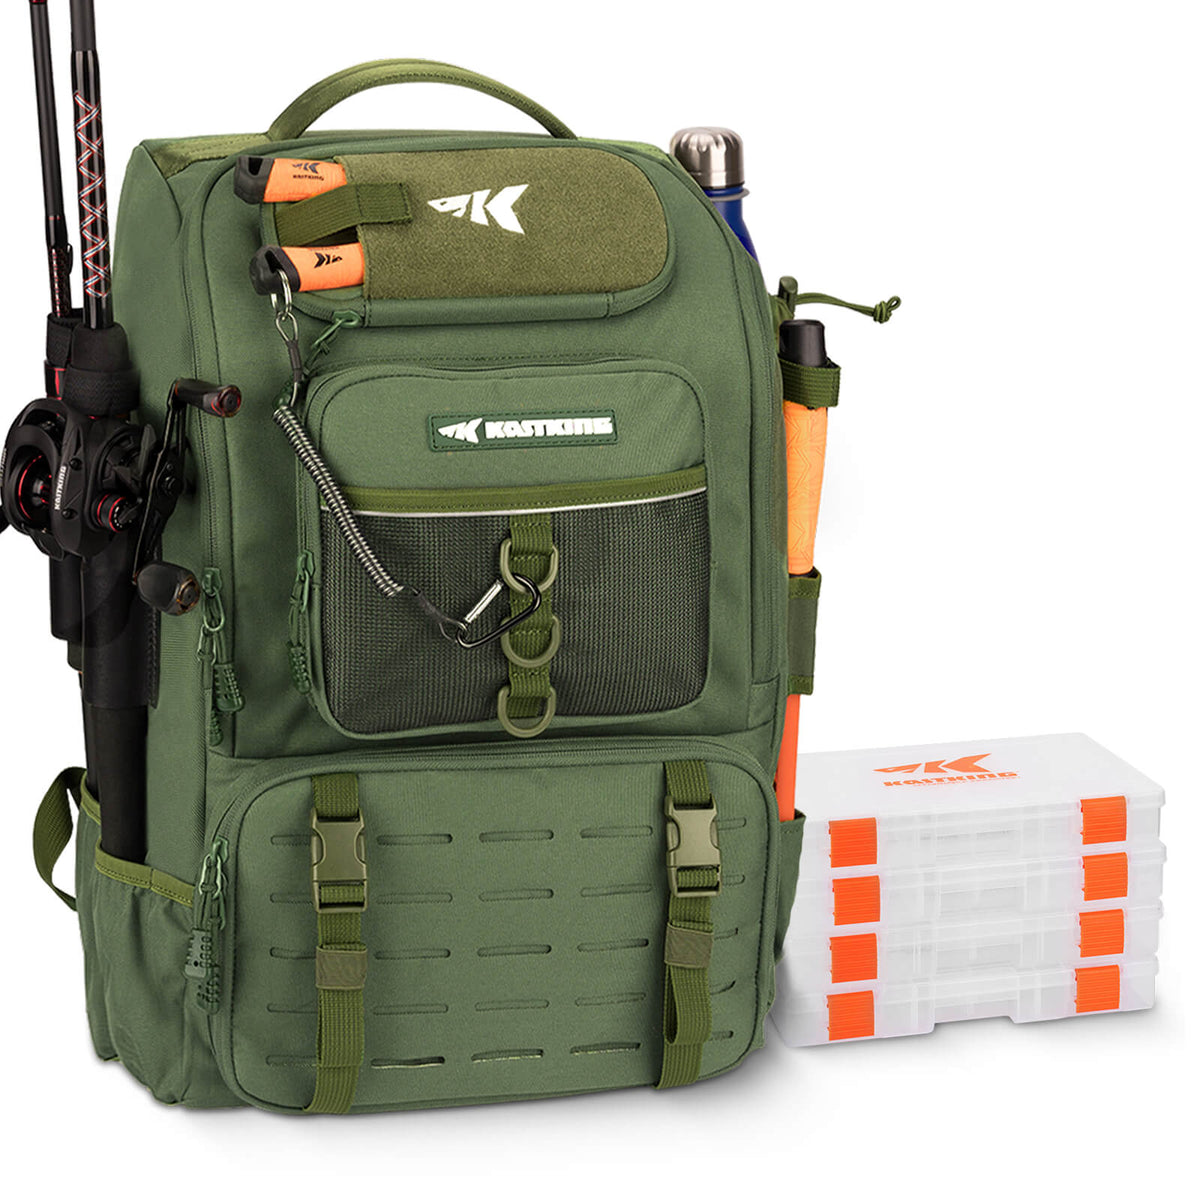 9-camp ® Fishing Rod Storage Bag